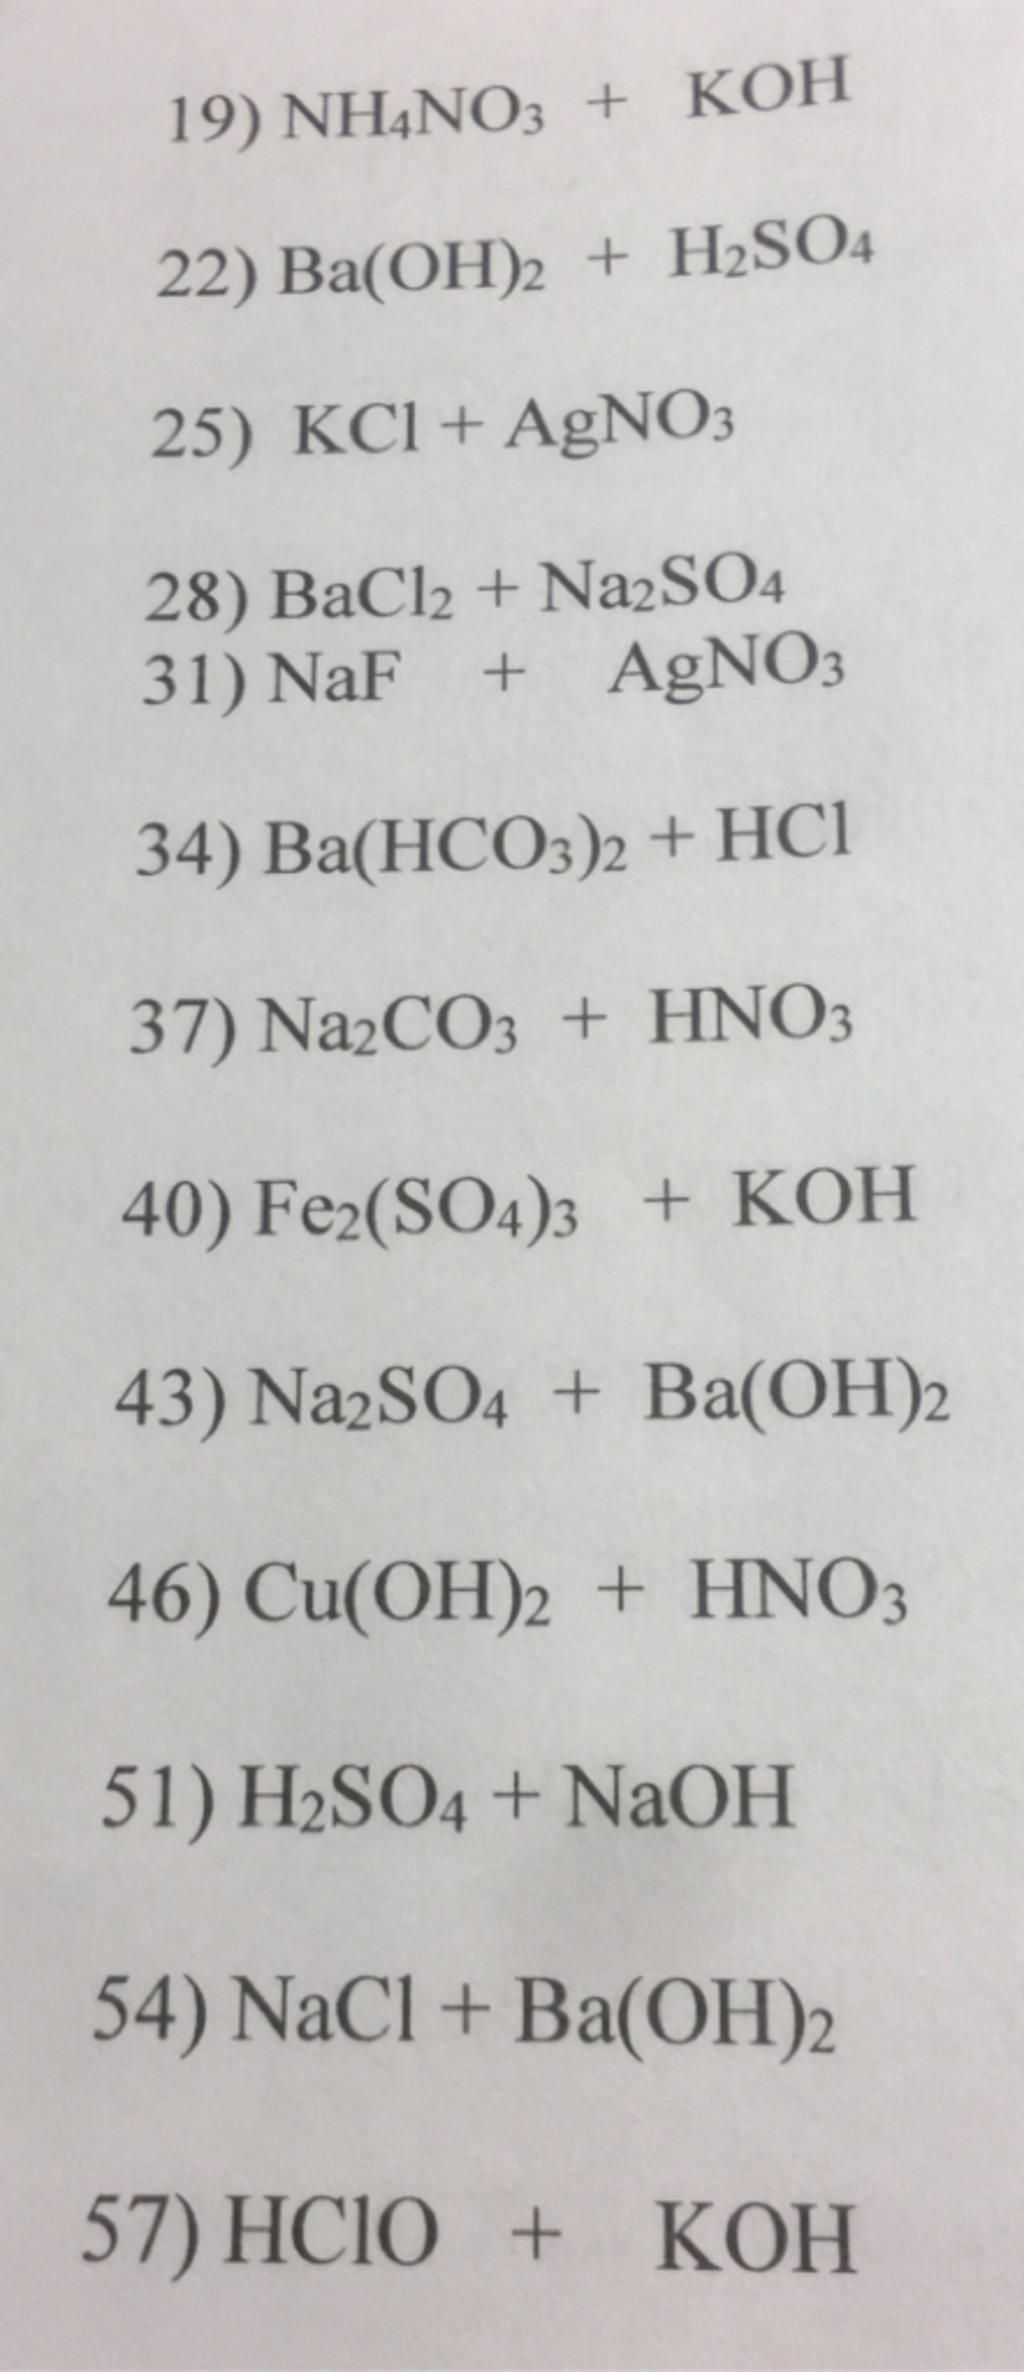 Phương trình hóa học của phản ứng giữa NH4NO3 và NaOH là gì?
